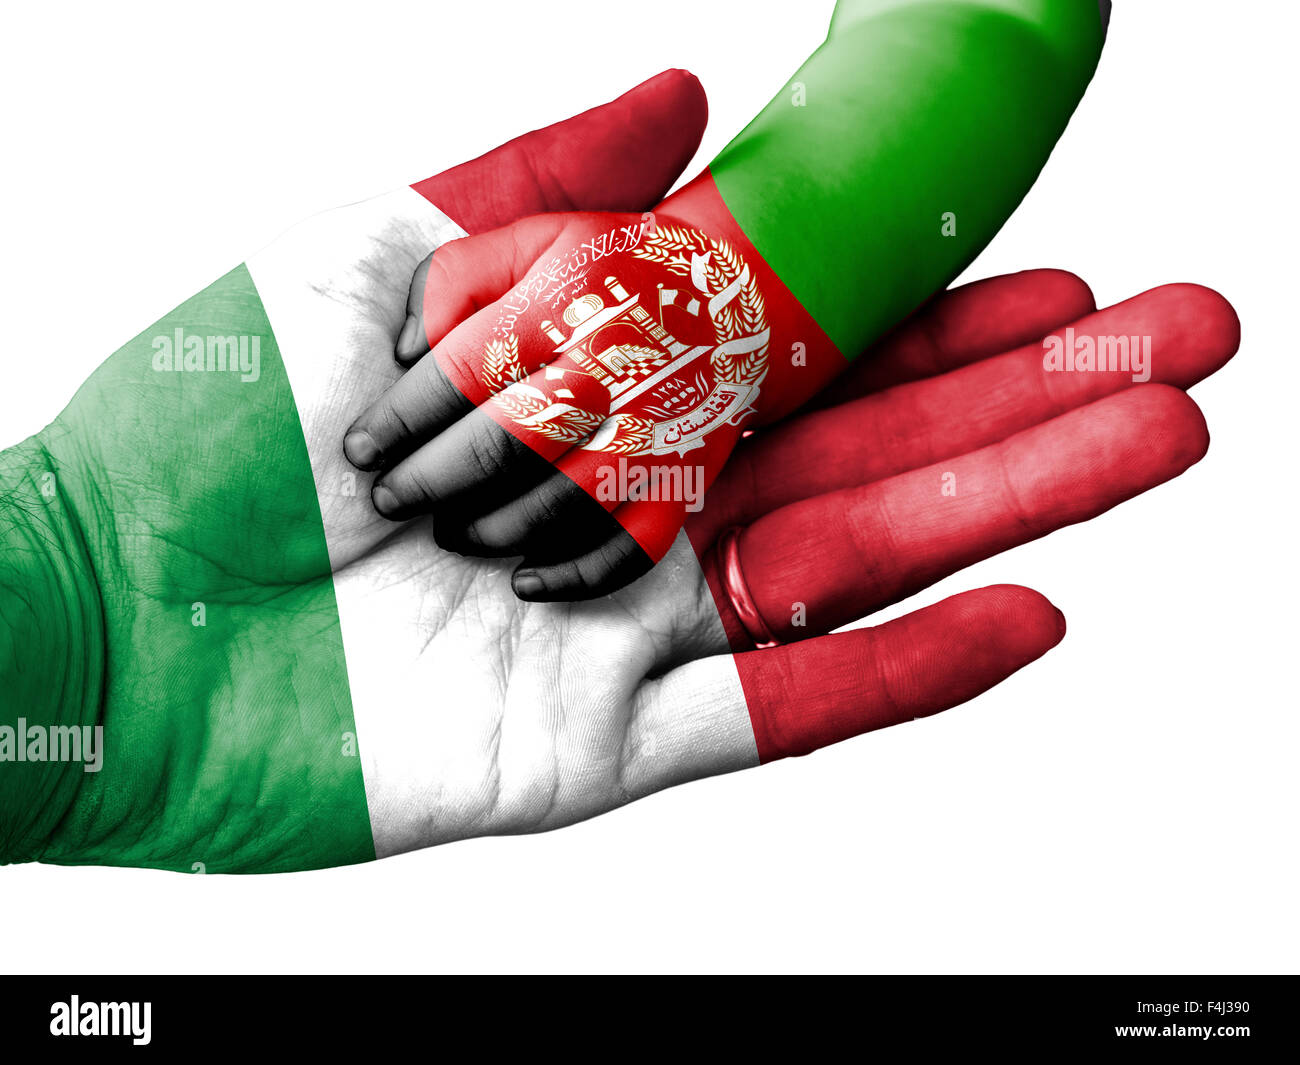 Flagge von Italien überlagert die Hand eines erwachsenen Mannes im Besitz einer Baby-Hand mit der Flagge Afghanistans überdruckt Stockfoto